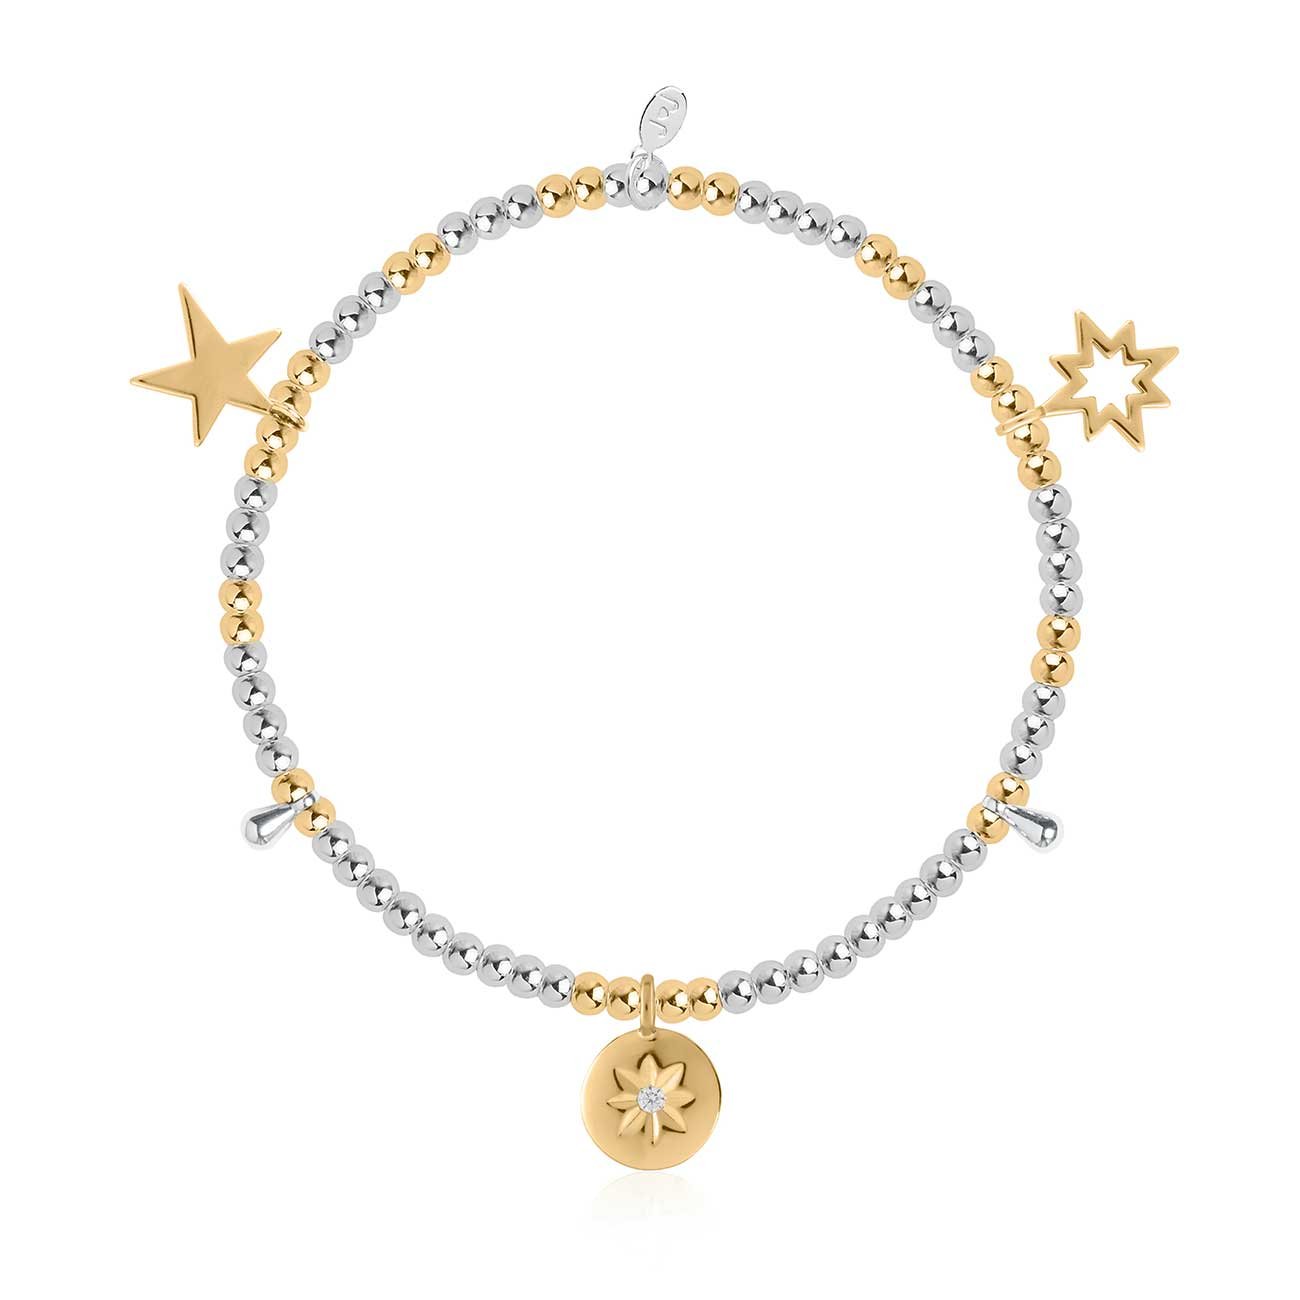 Joma Jewellery Life's A Charm Bracelet Sparkle and Shine